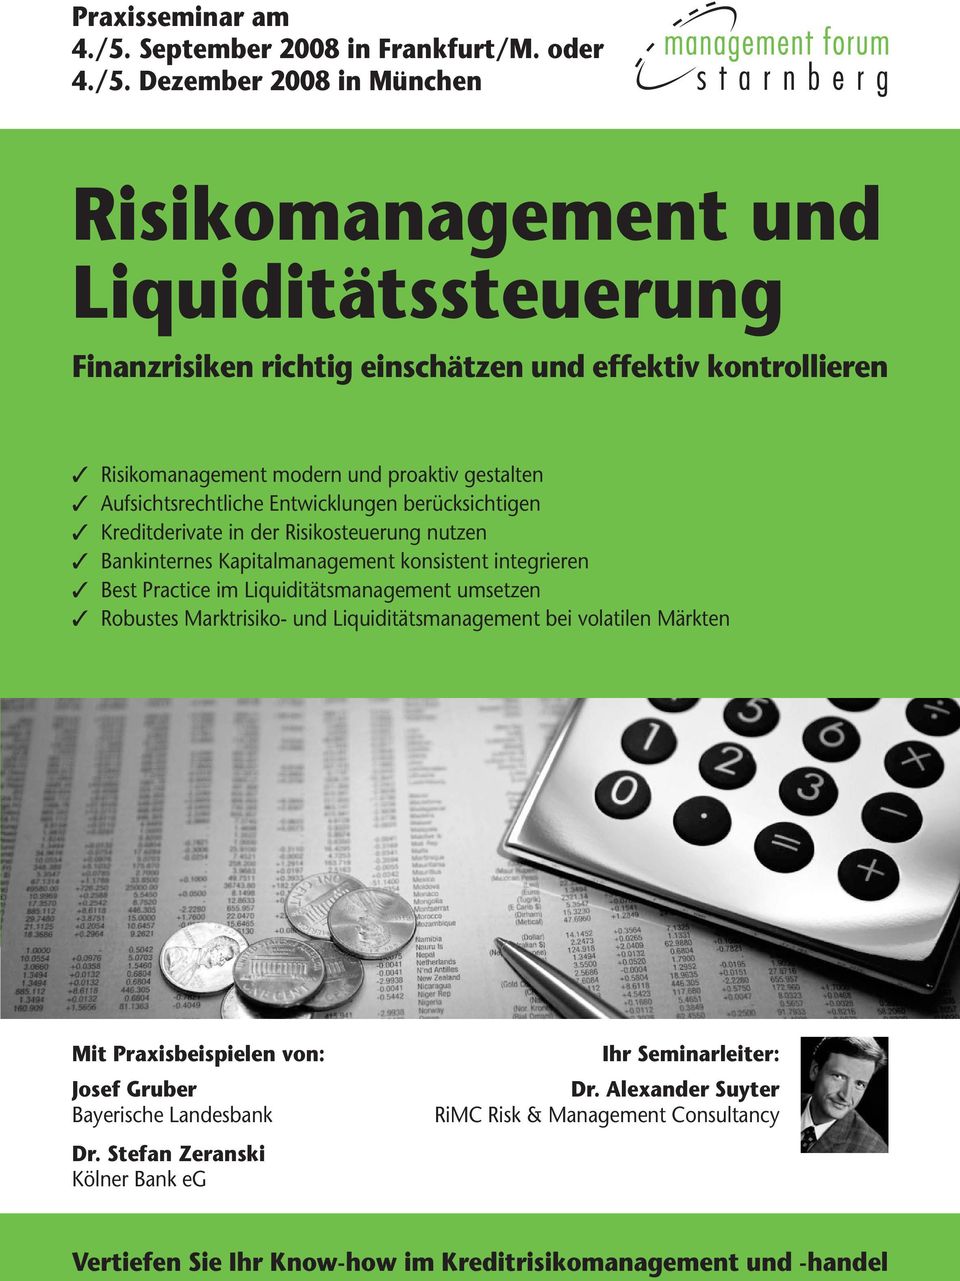 Dezember 2008 in München Risikomanagement und Liquiditätssteuerung Finanzrisiken richtig einschätzen und effektiv kontrollieren Risikomanagement modern und proaktiv gestalten